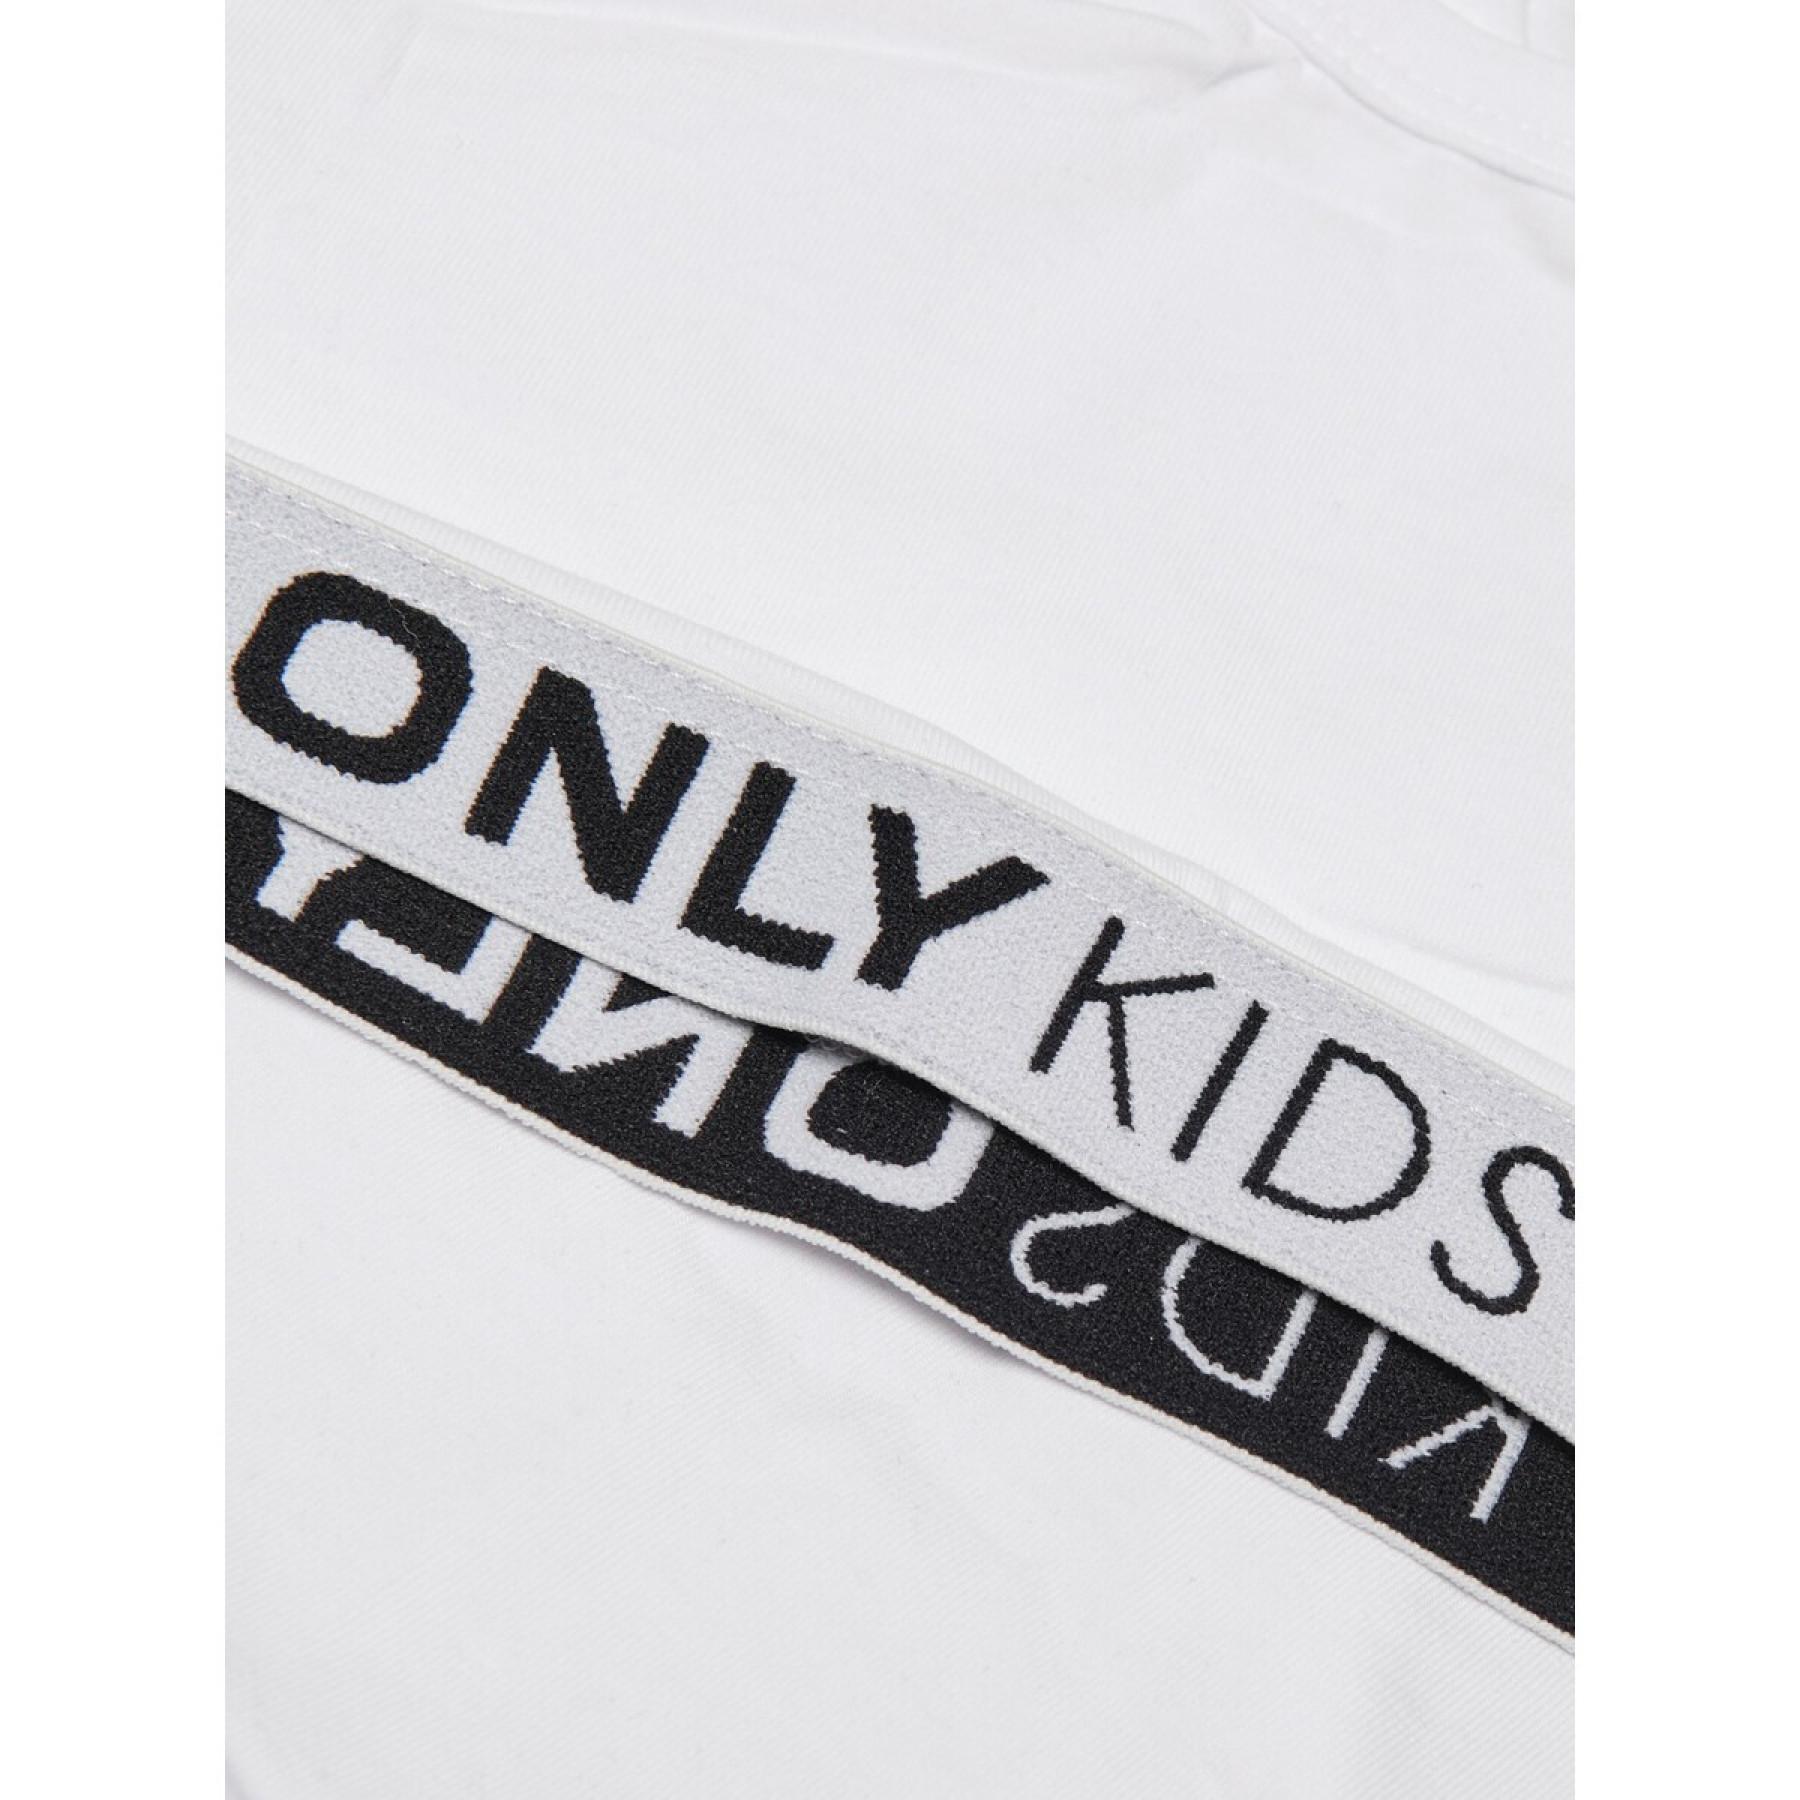 Zestaw 2 t-shirtów dla dziewczynek Only kids Love life sport